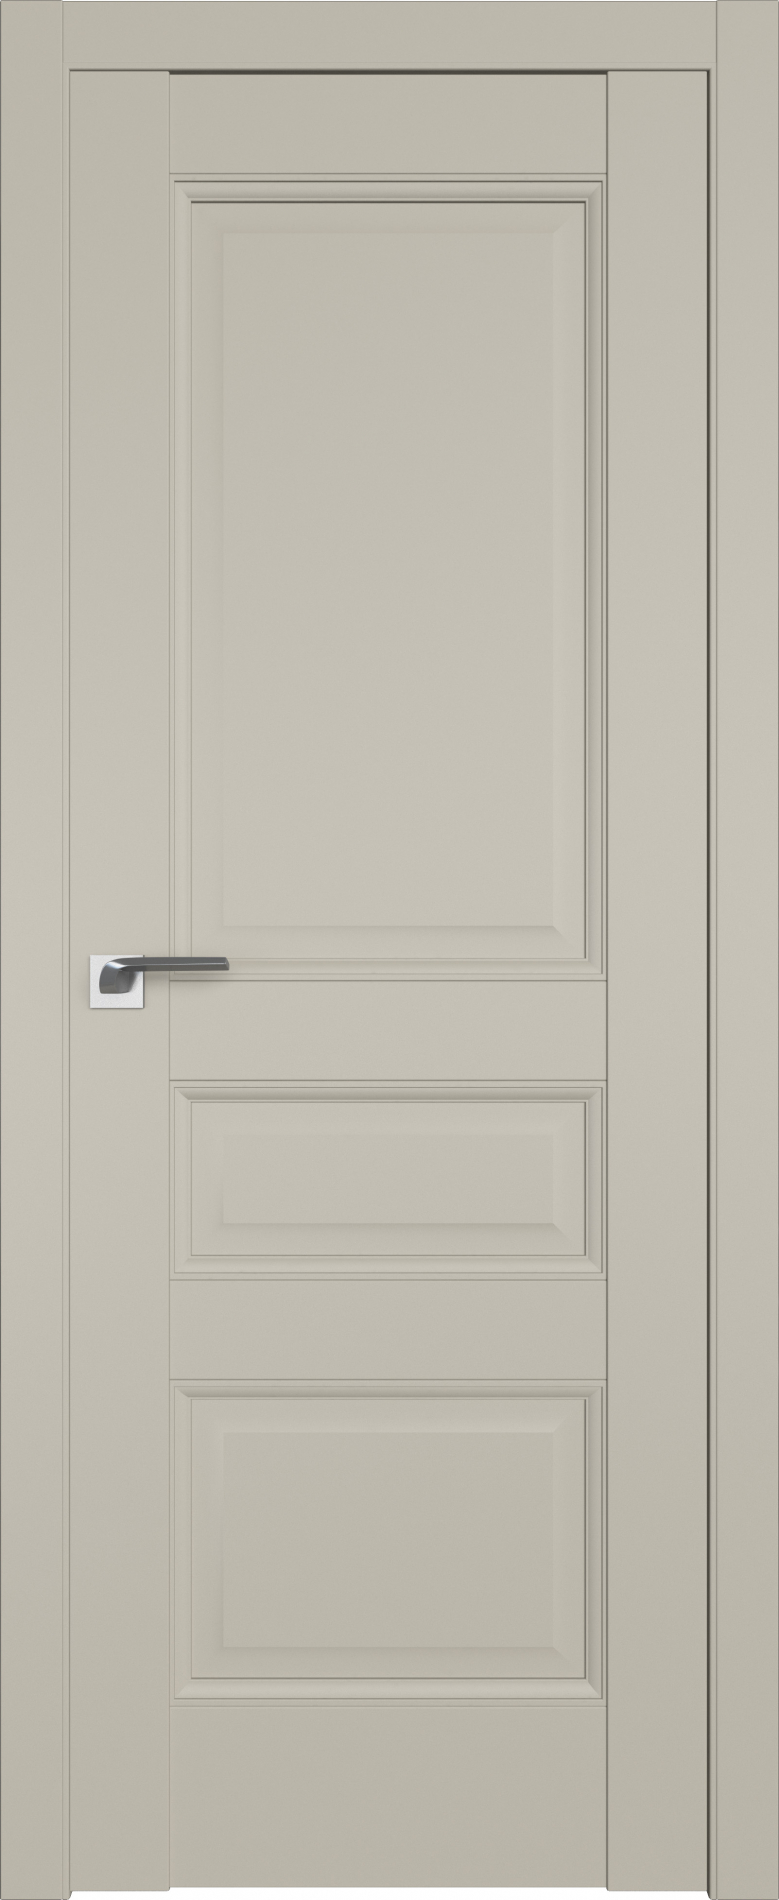 межкомнатные двери  Profil Doors 95U шеллгрей